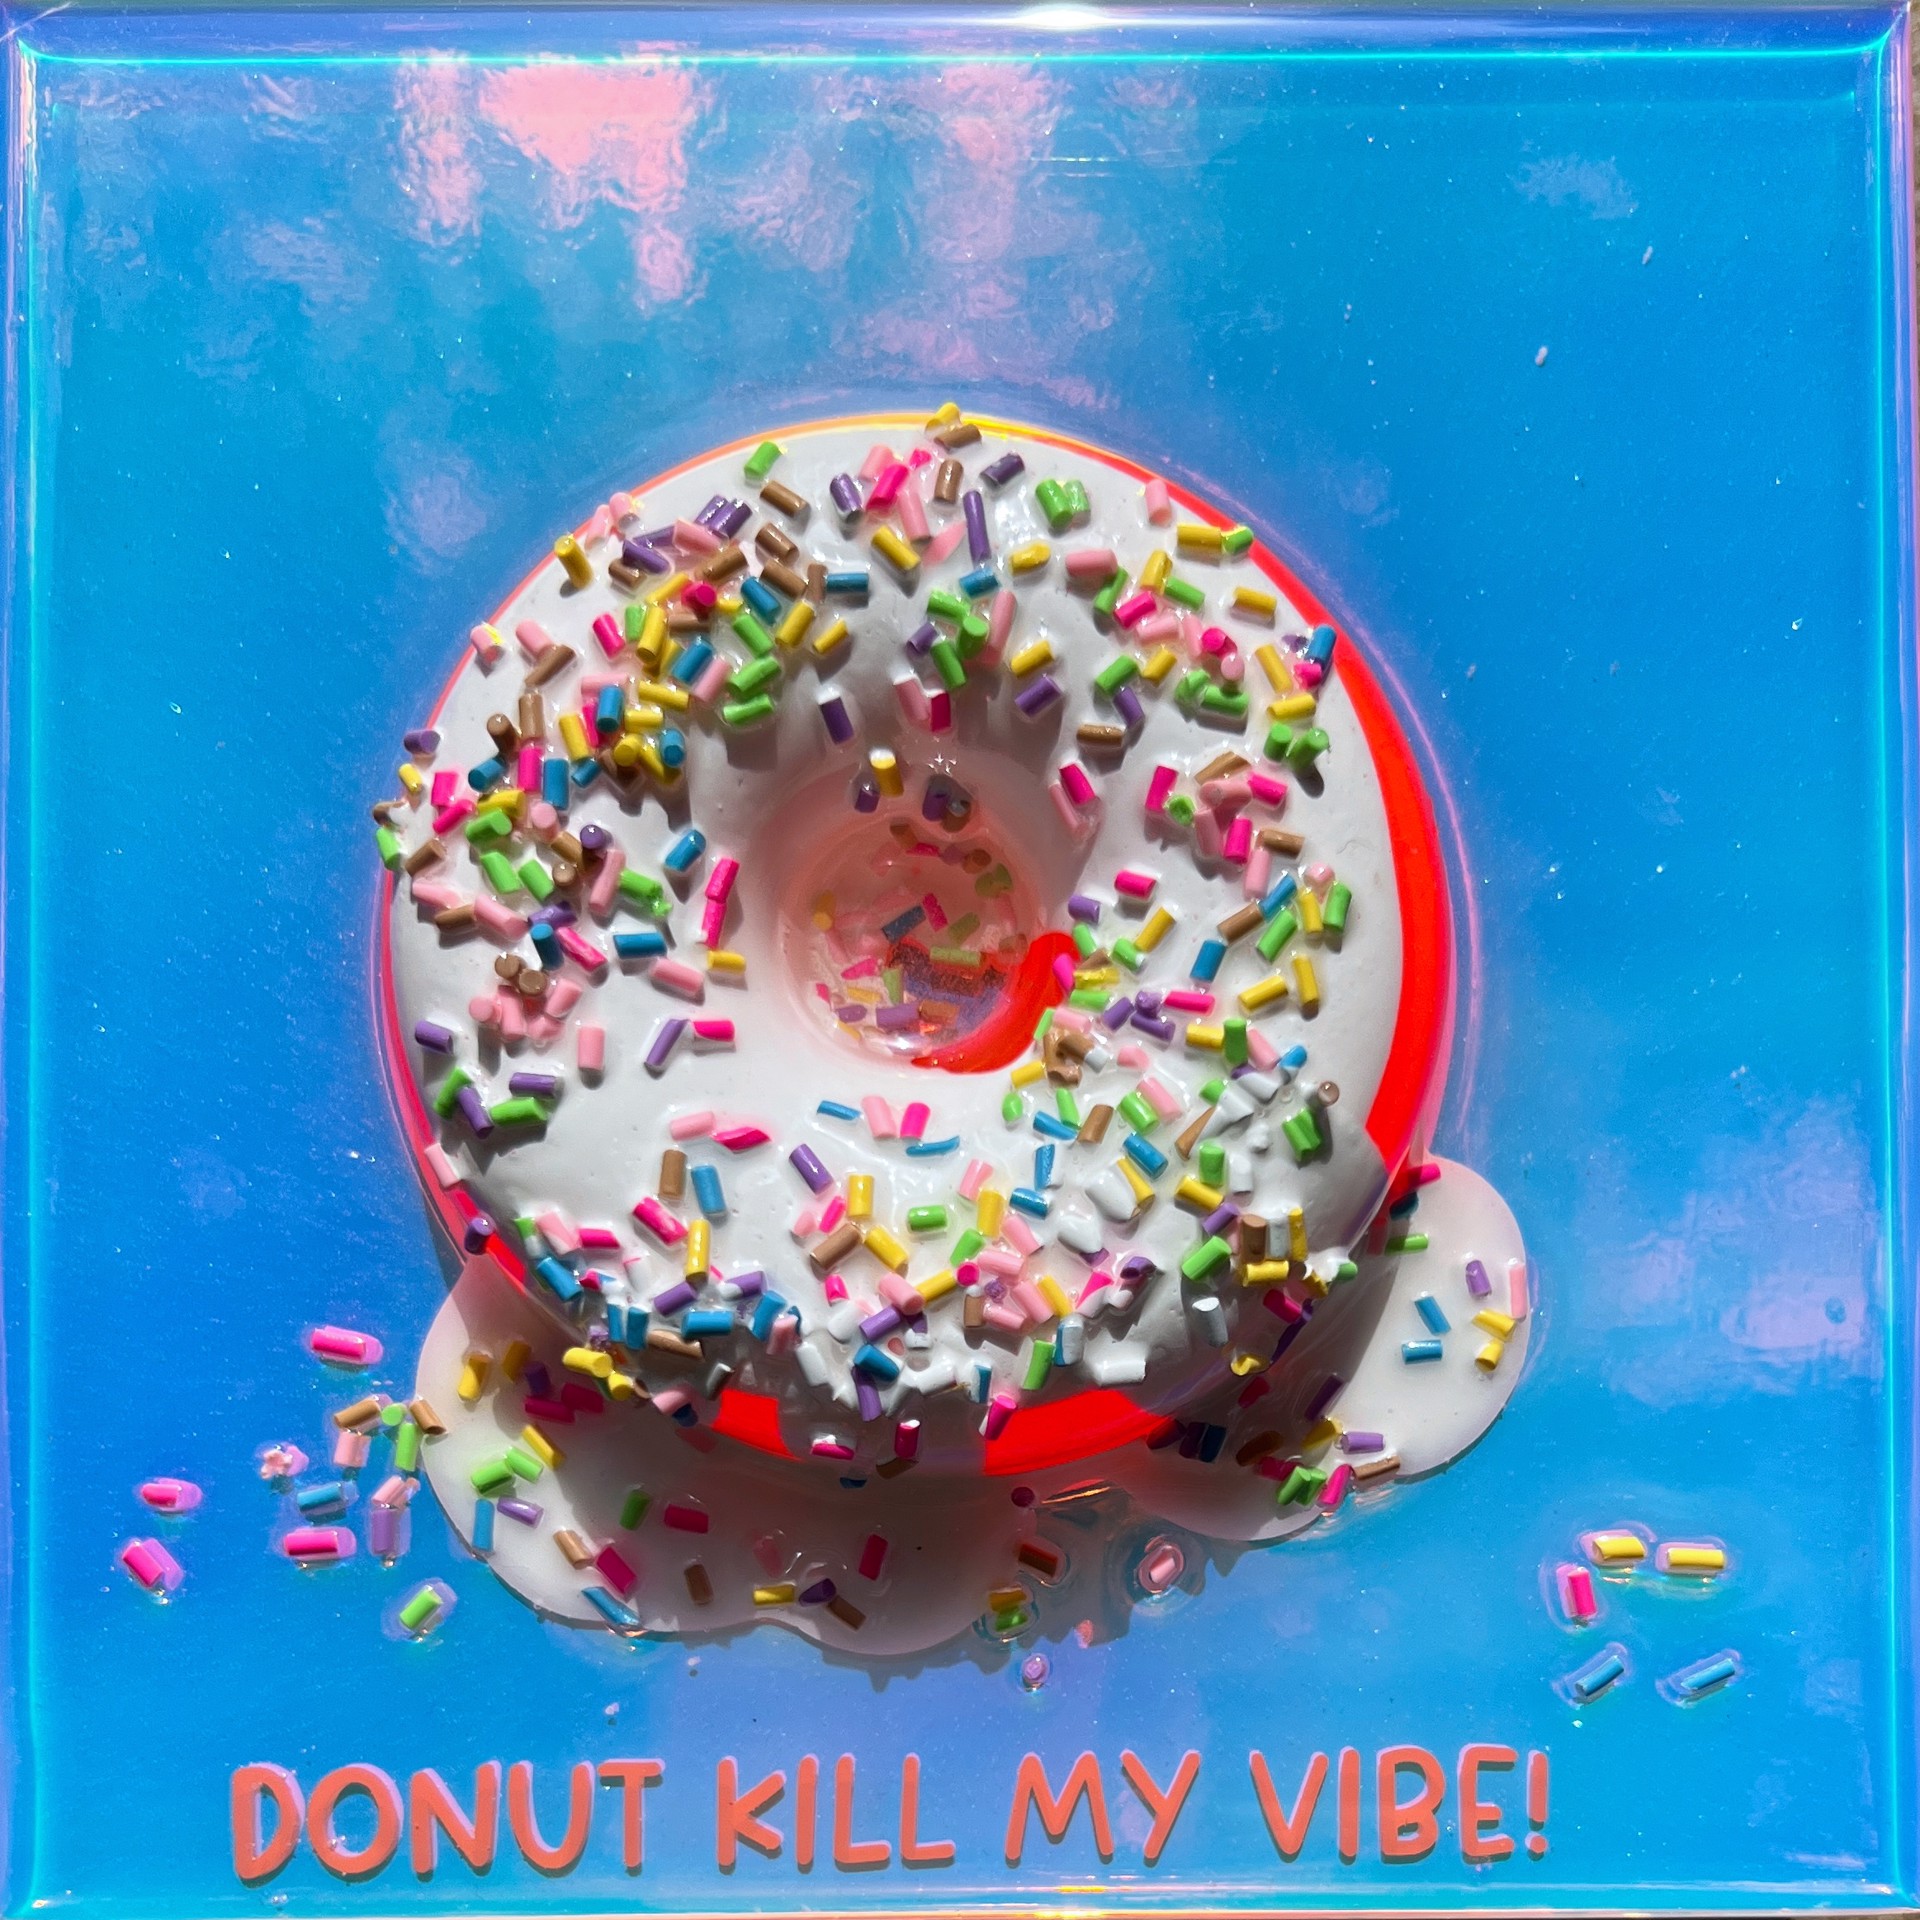 S Donut Kill My Vibe #2 by Ana Hefco